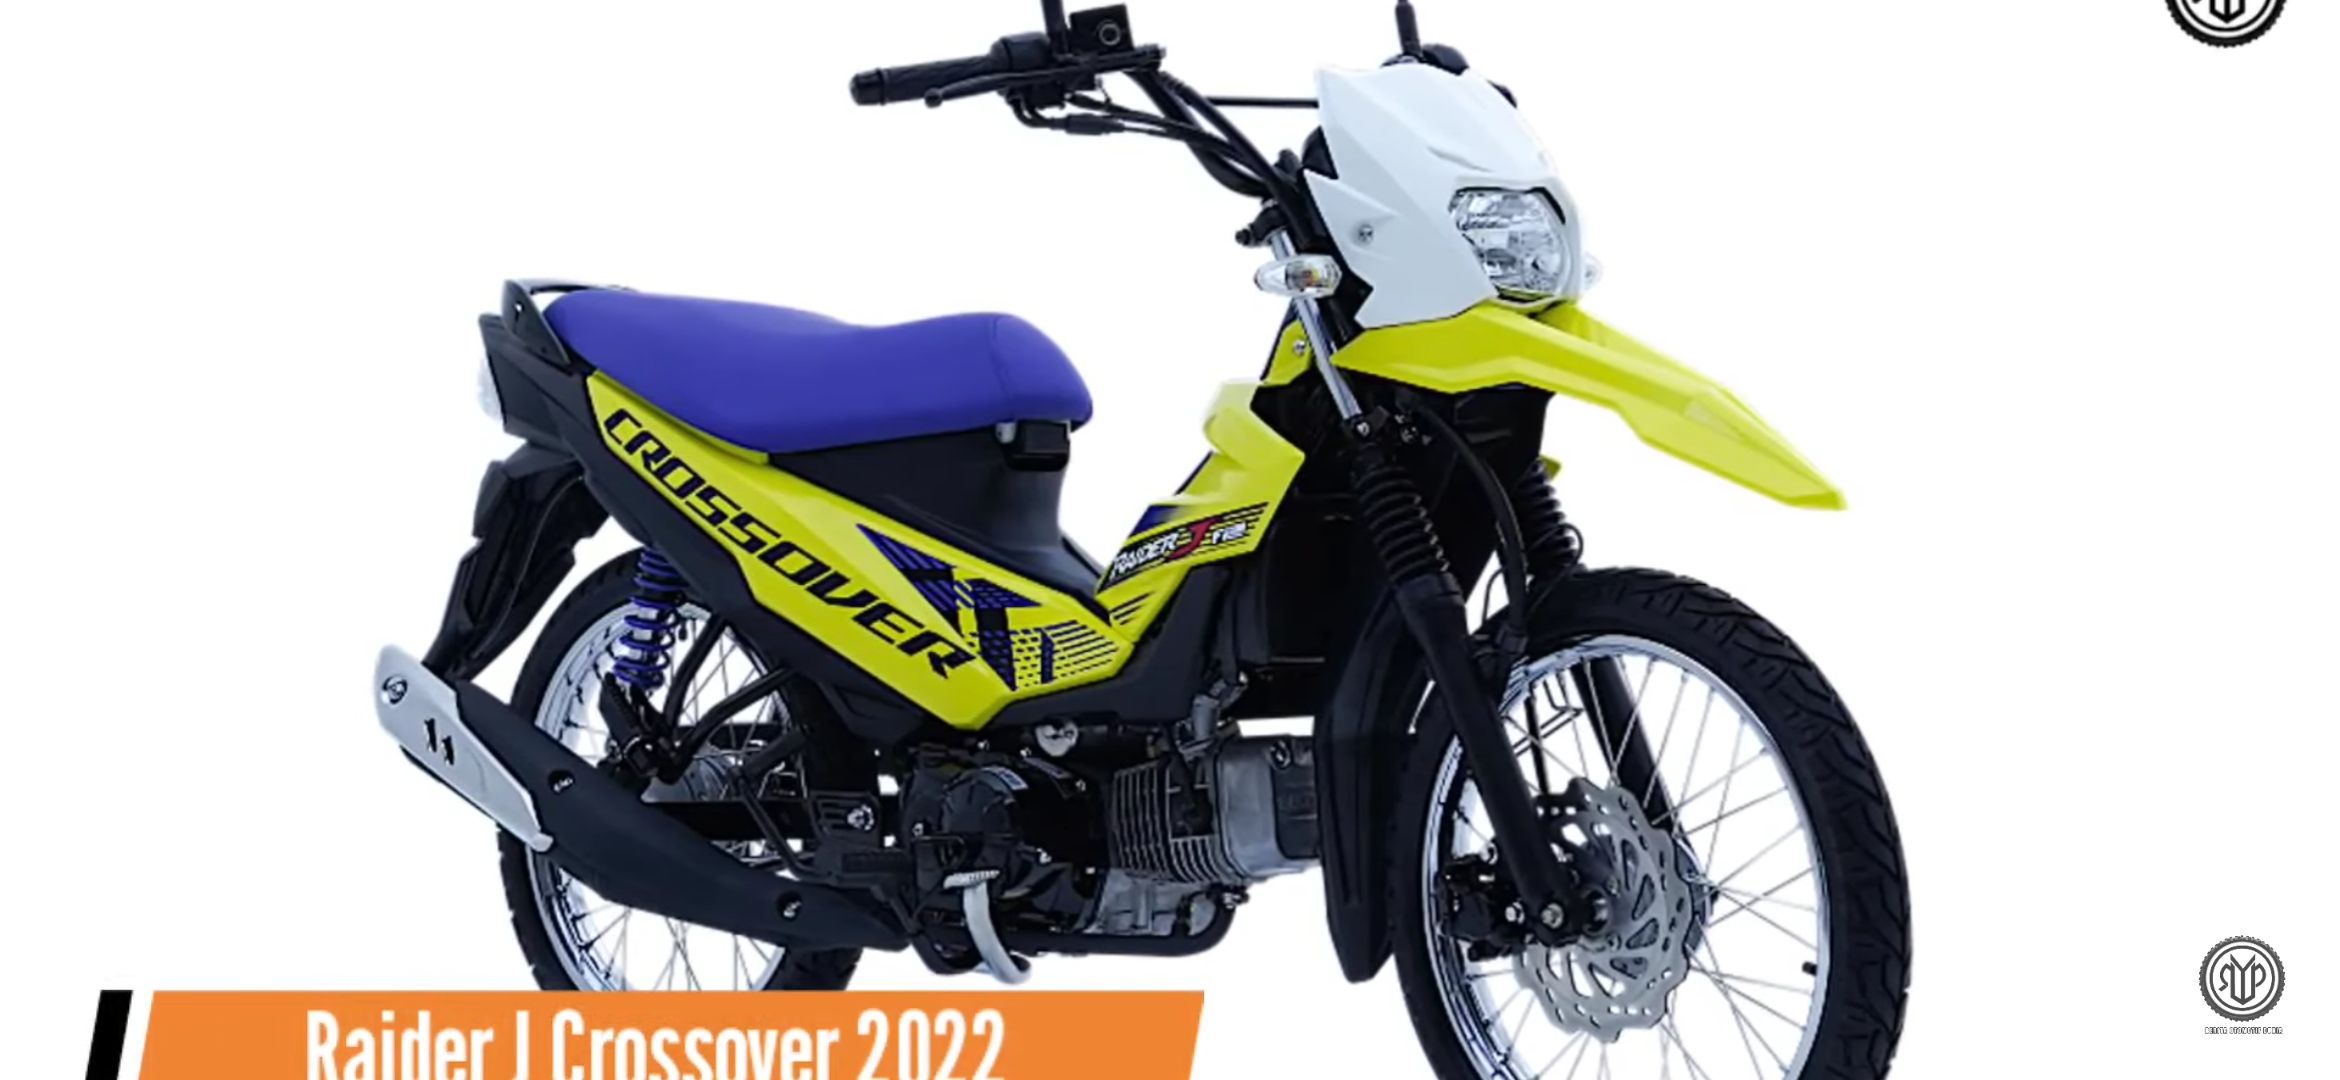 Suzuki Rider J Crossover 